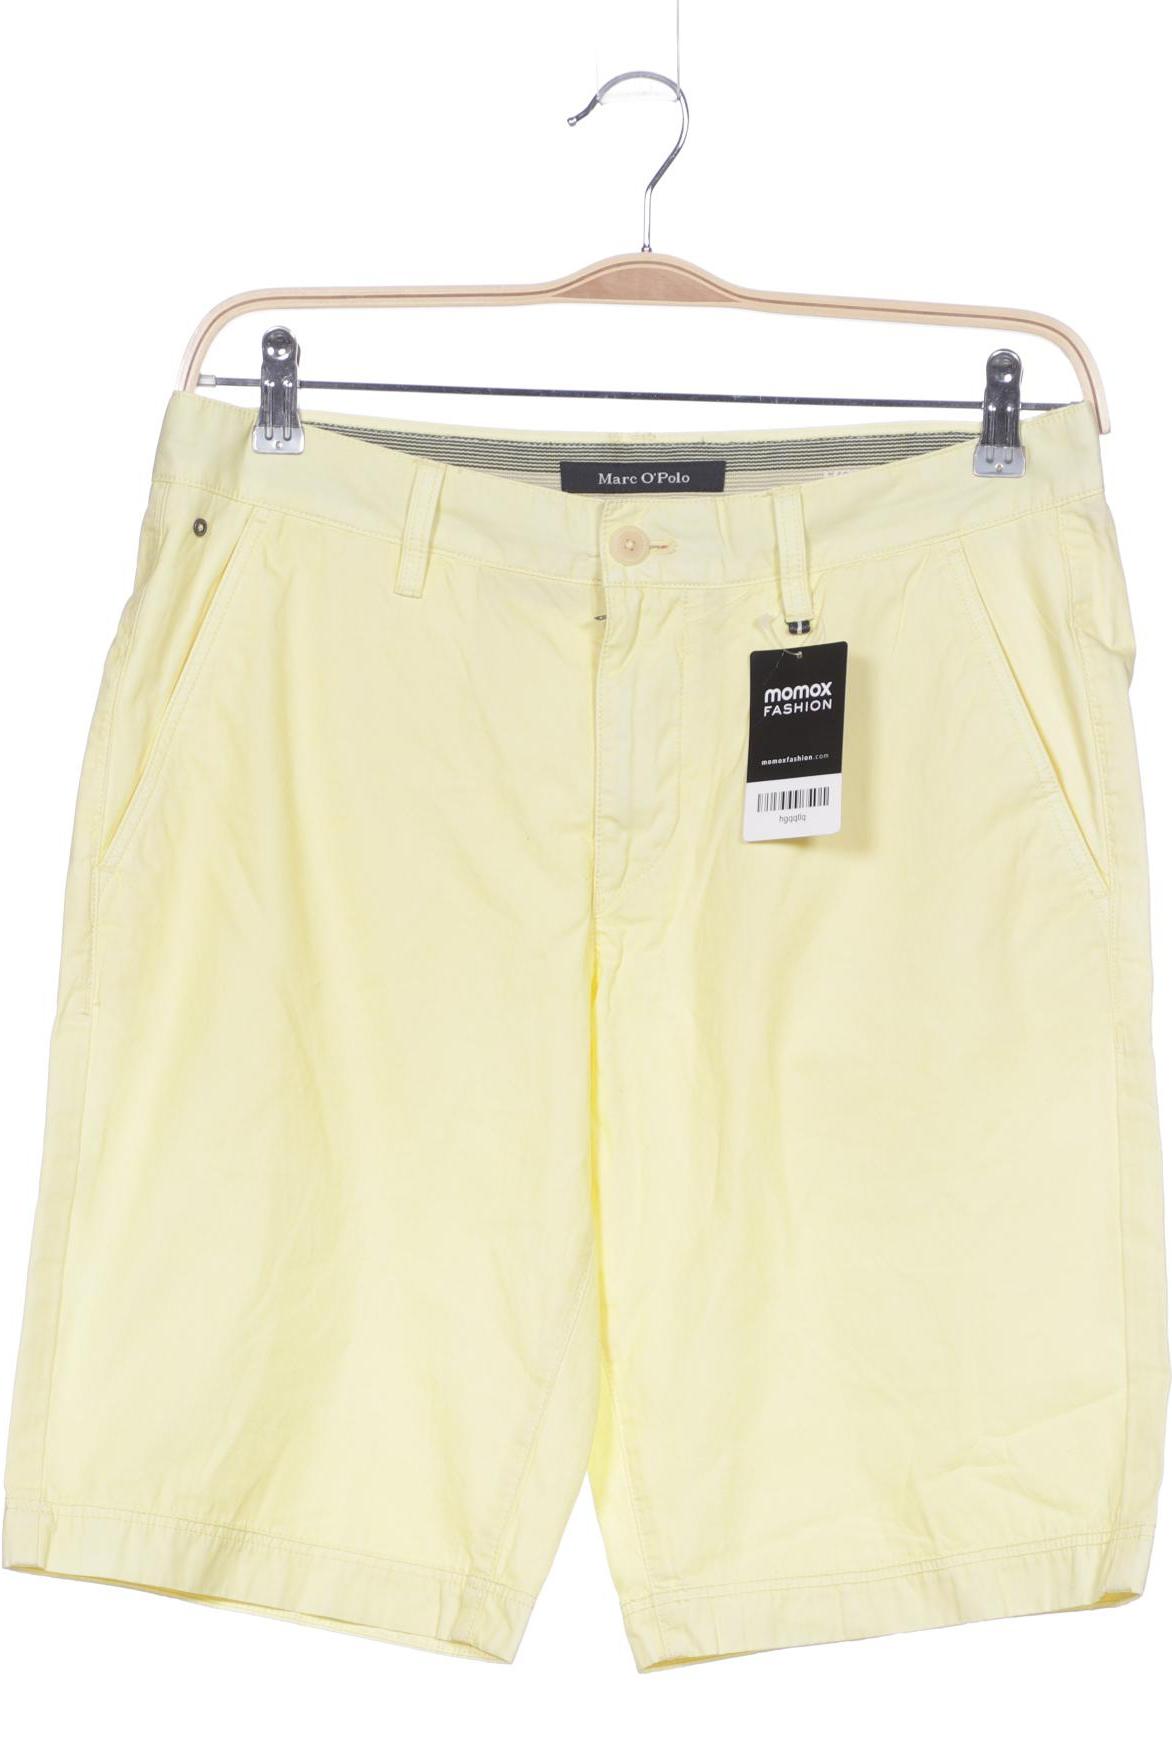 Marc O Polo Herren Shorts, gelb, Gr. 50 von Marc O Polo